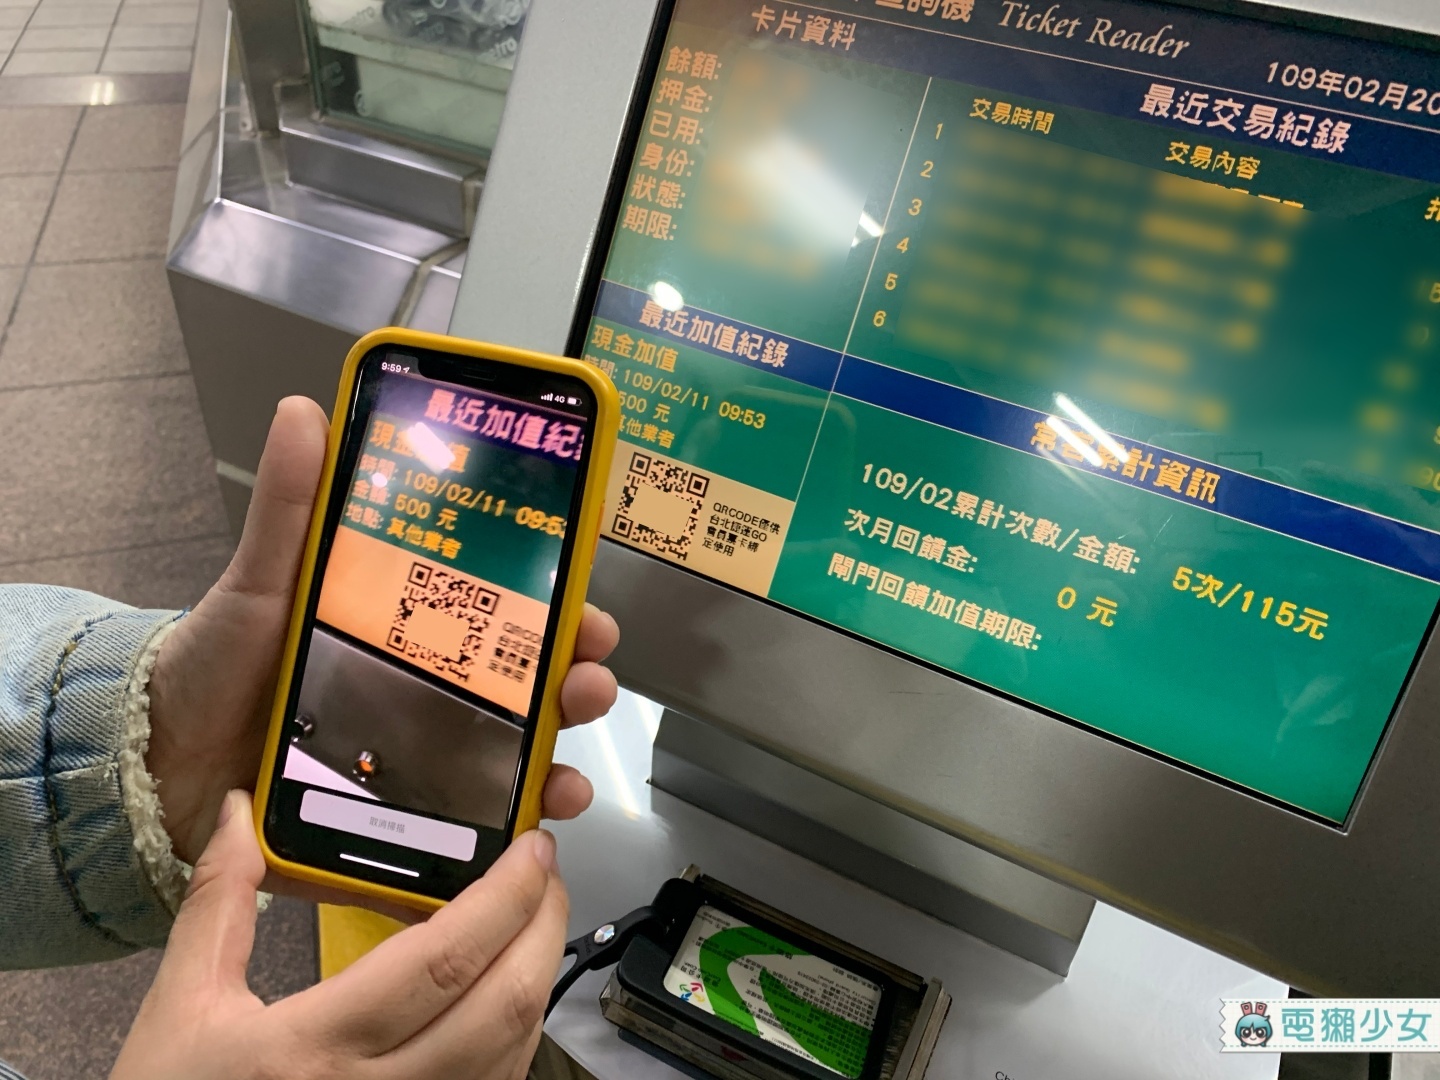 不用到捷運站只要用手機App『 台北捷運GO 』就可以隨時查詢『 常客優惠 』的回饋紀錄啦 Android / iOS